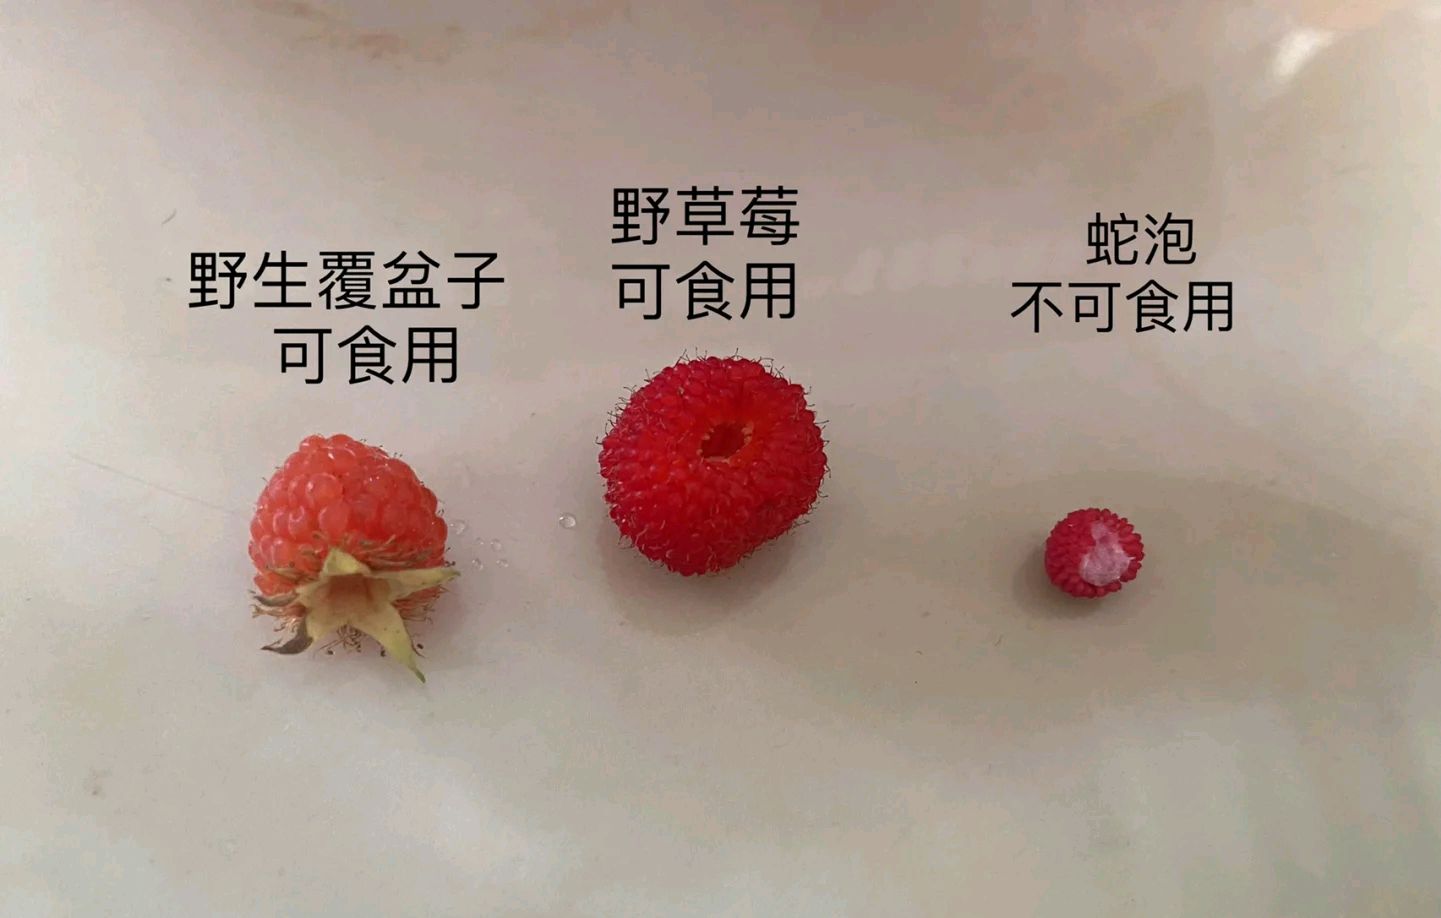 区分覆盆子 野草莓 和蛇莓